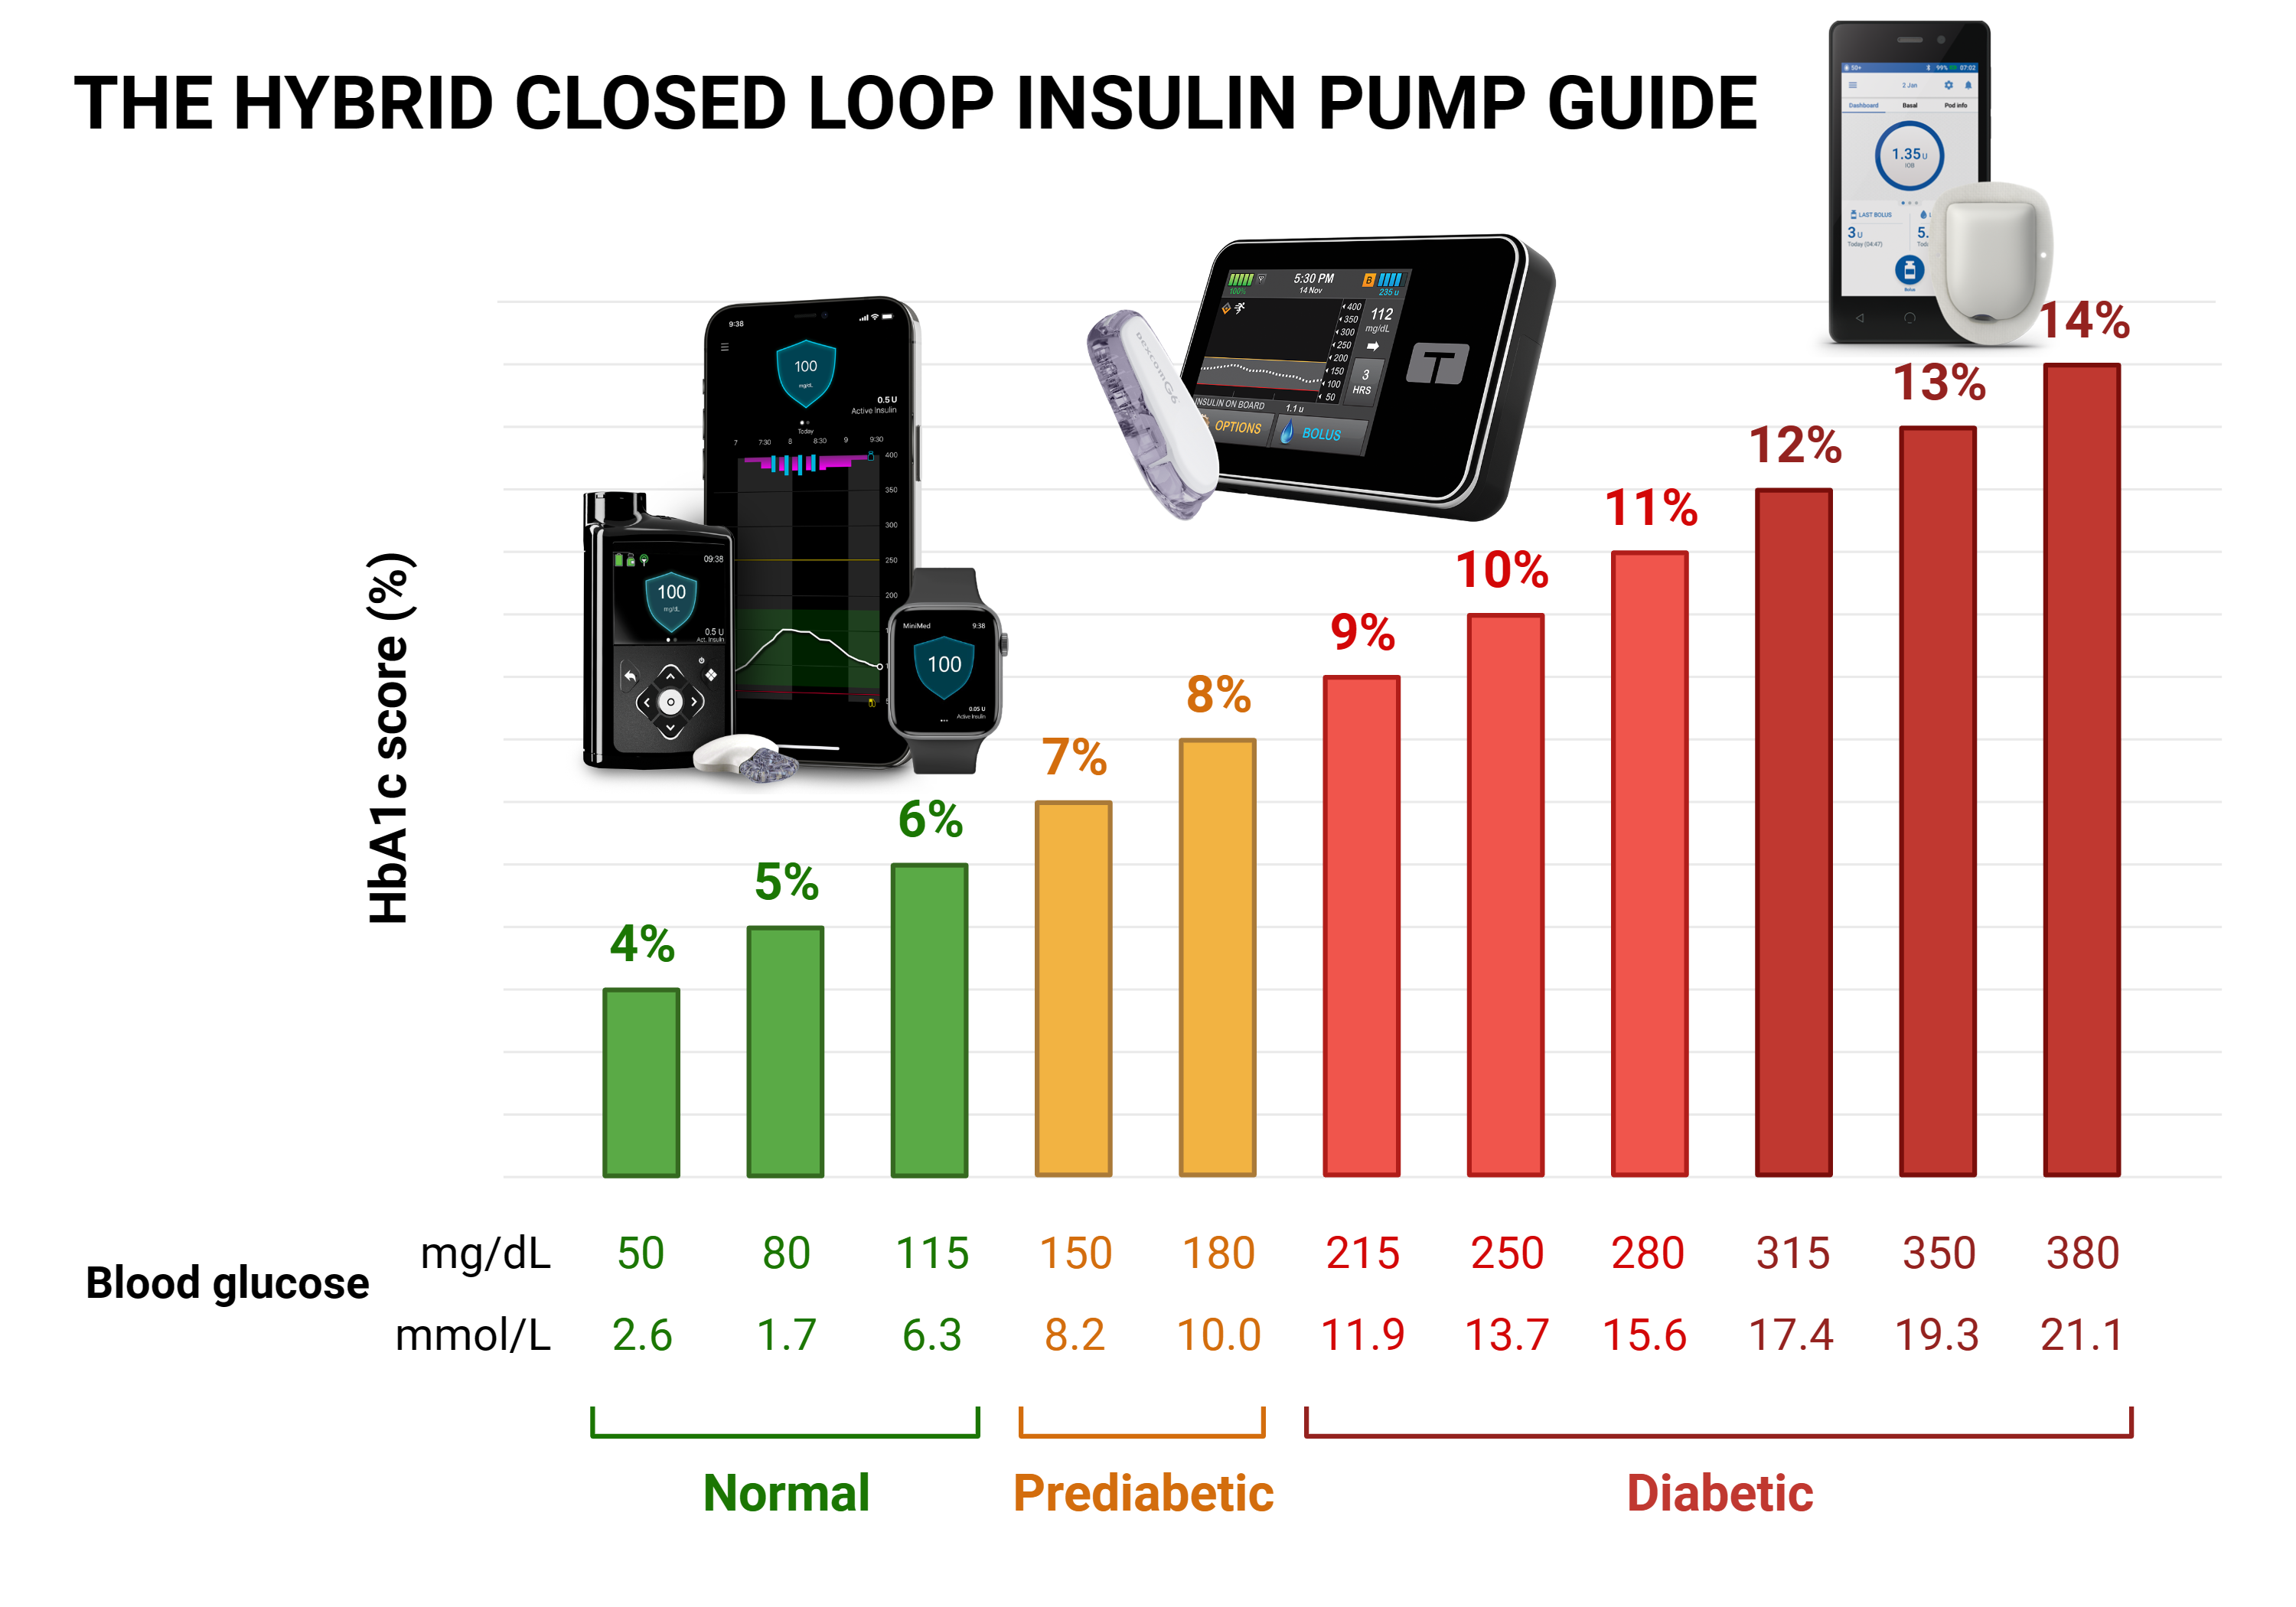 Insulin pump manufacturers